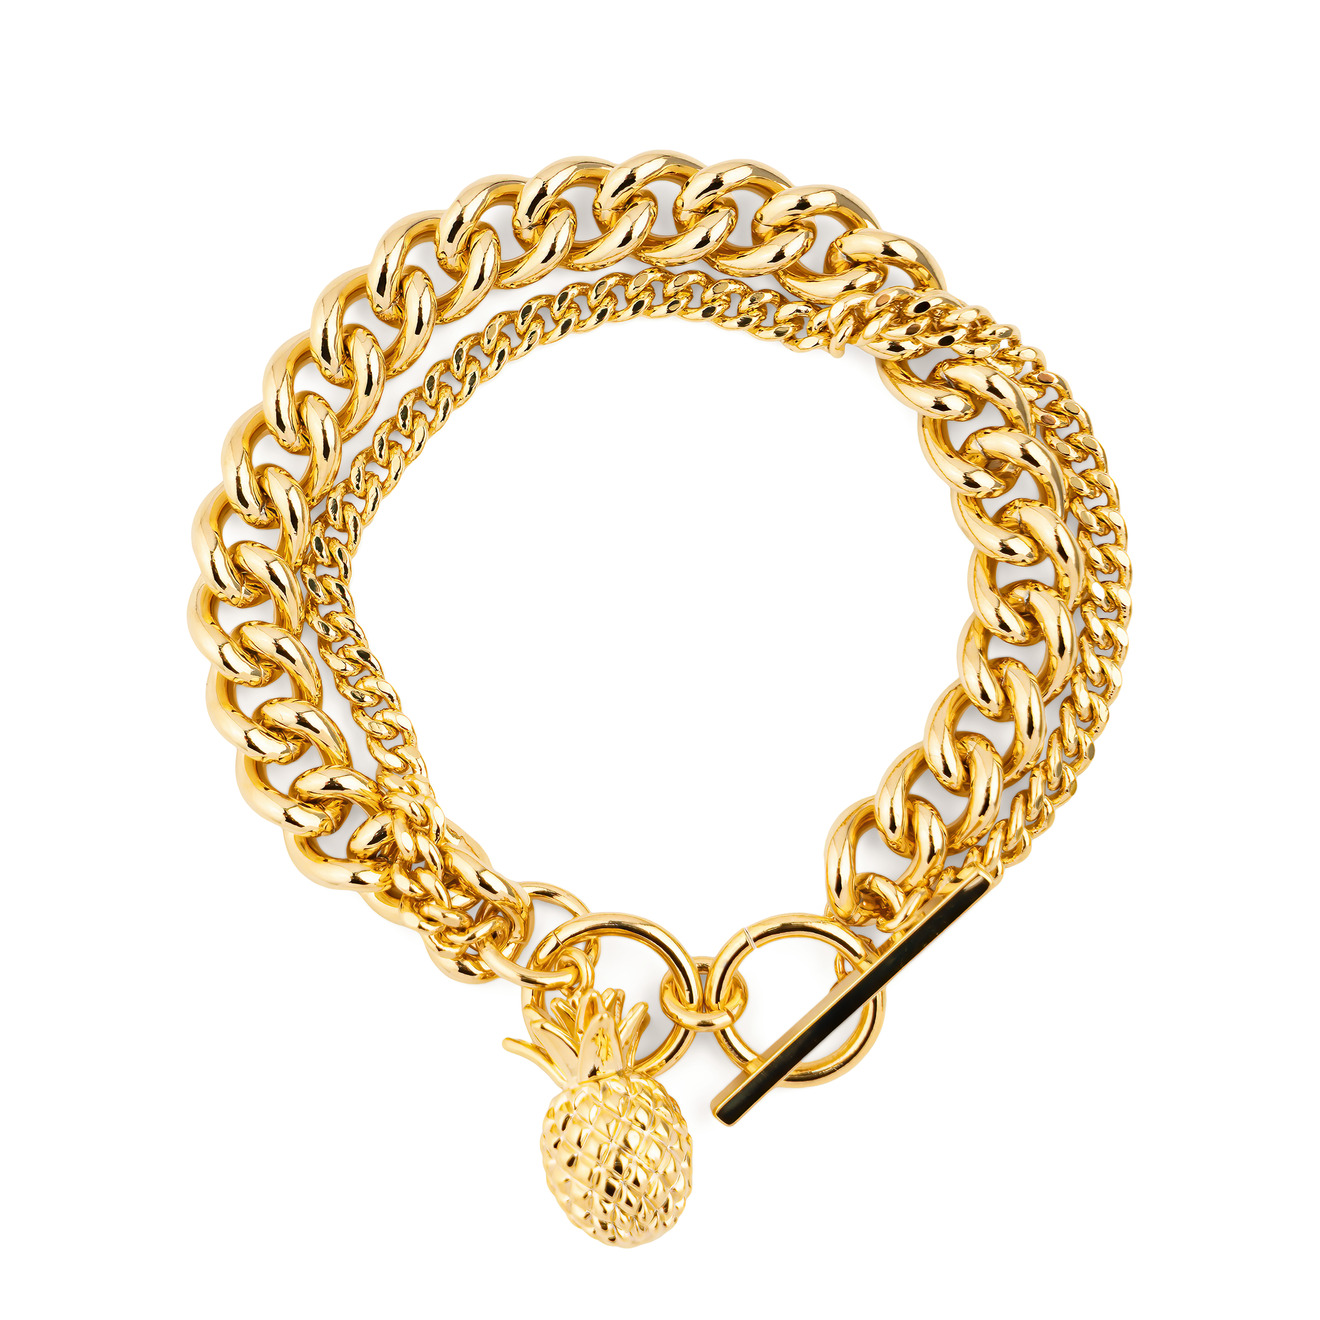 Free Form Jewelry Двойной золотистый браслет с ананасом цена и фото